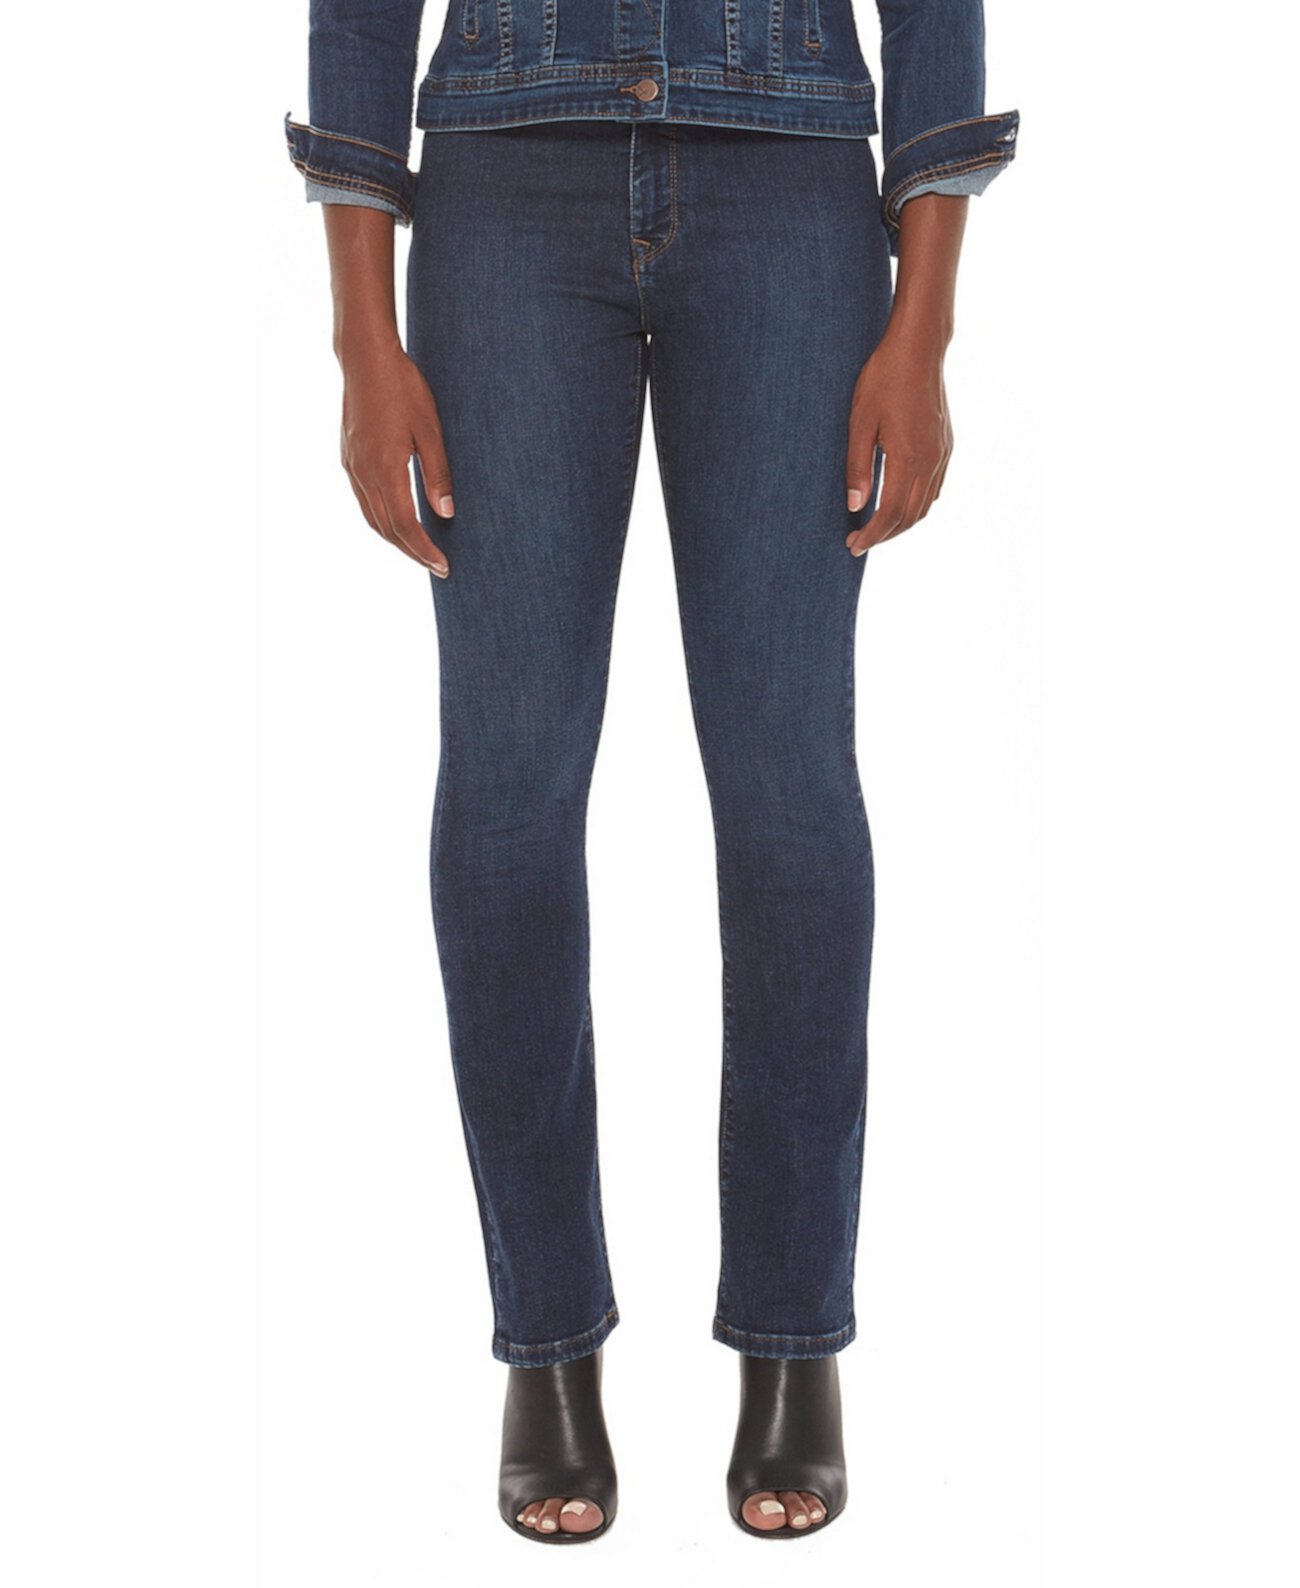 Женские прямые джинсы со средней посадкой Lola Jeans